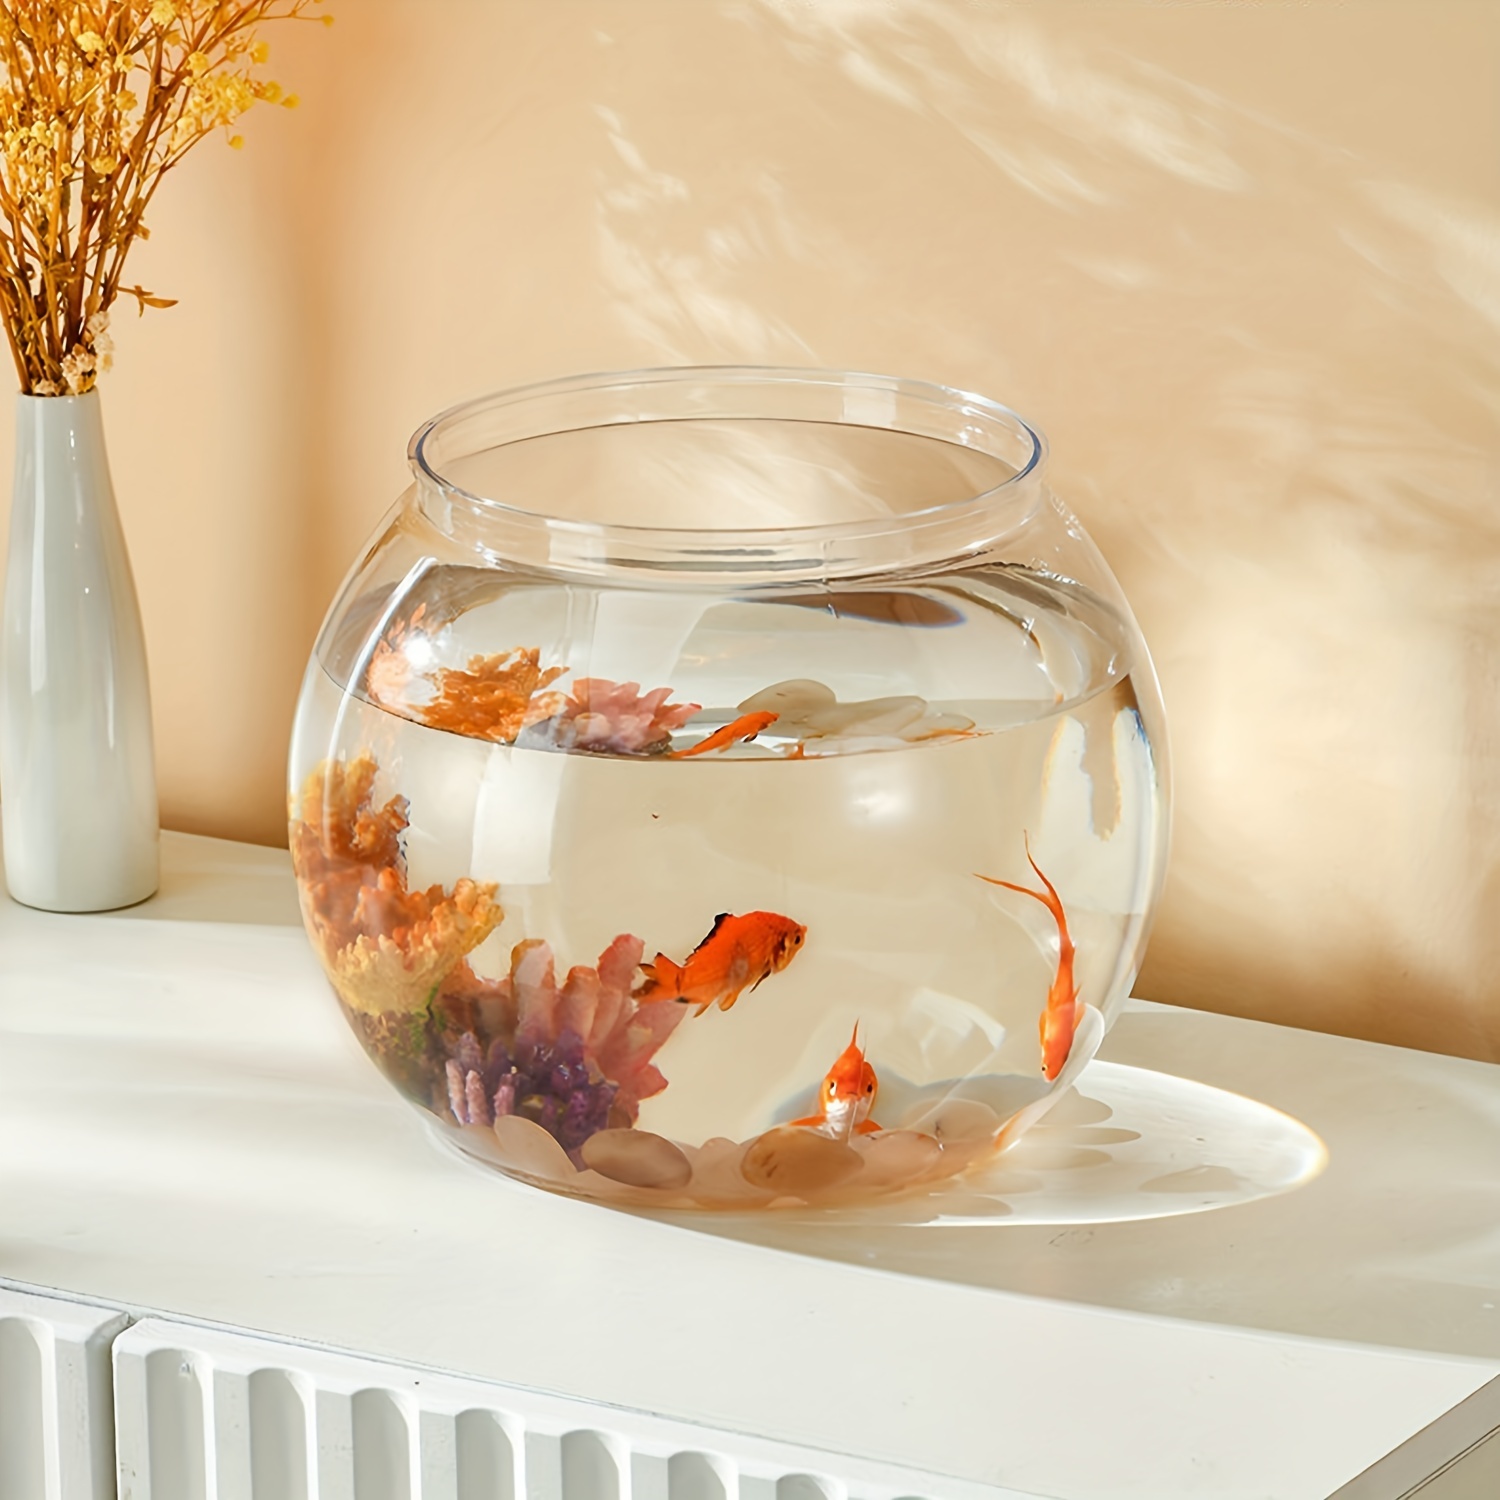 Aquarium Fish Tank Transparent Small Aquarium Goldfish Tank - Temu